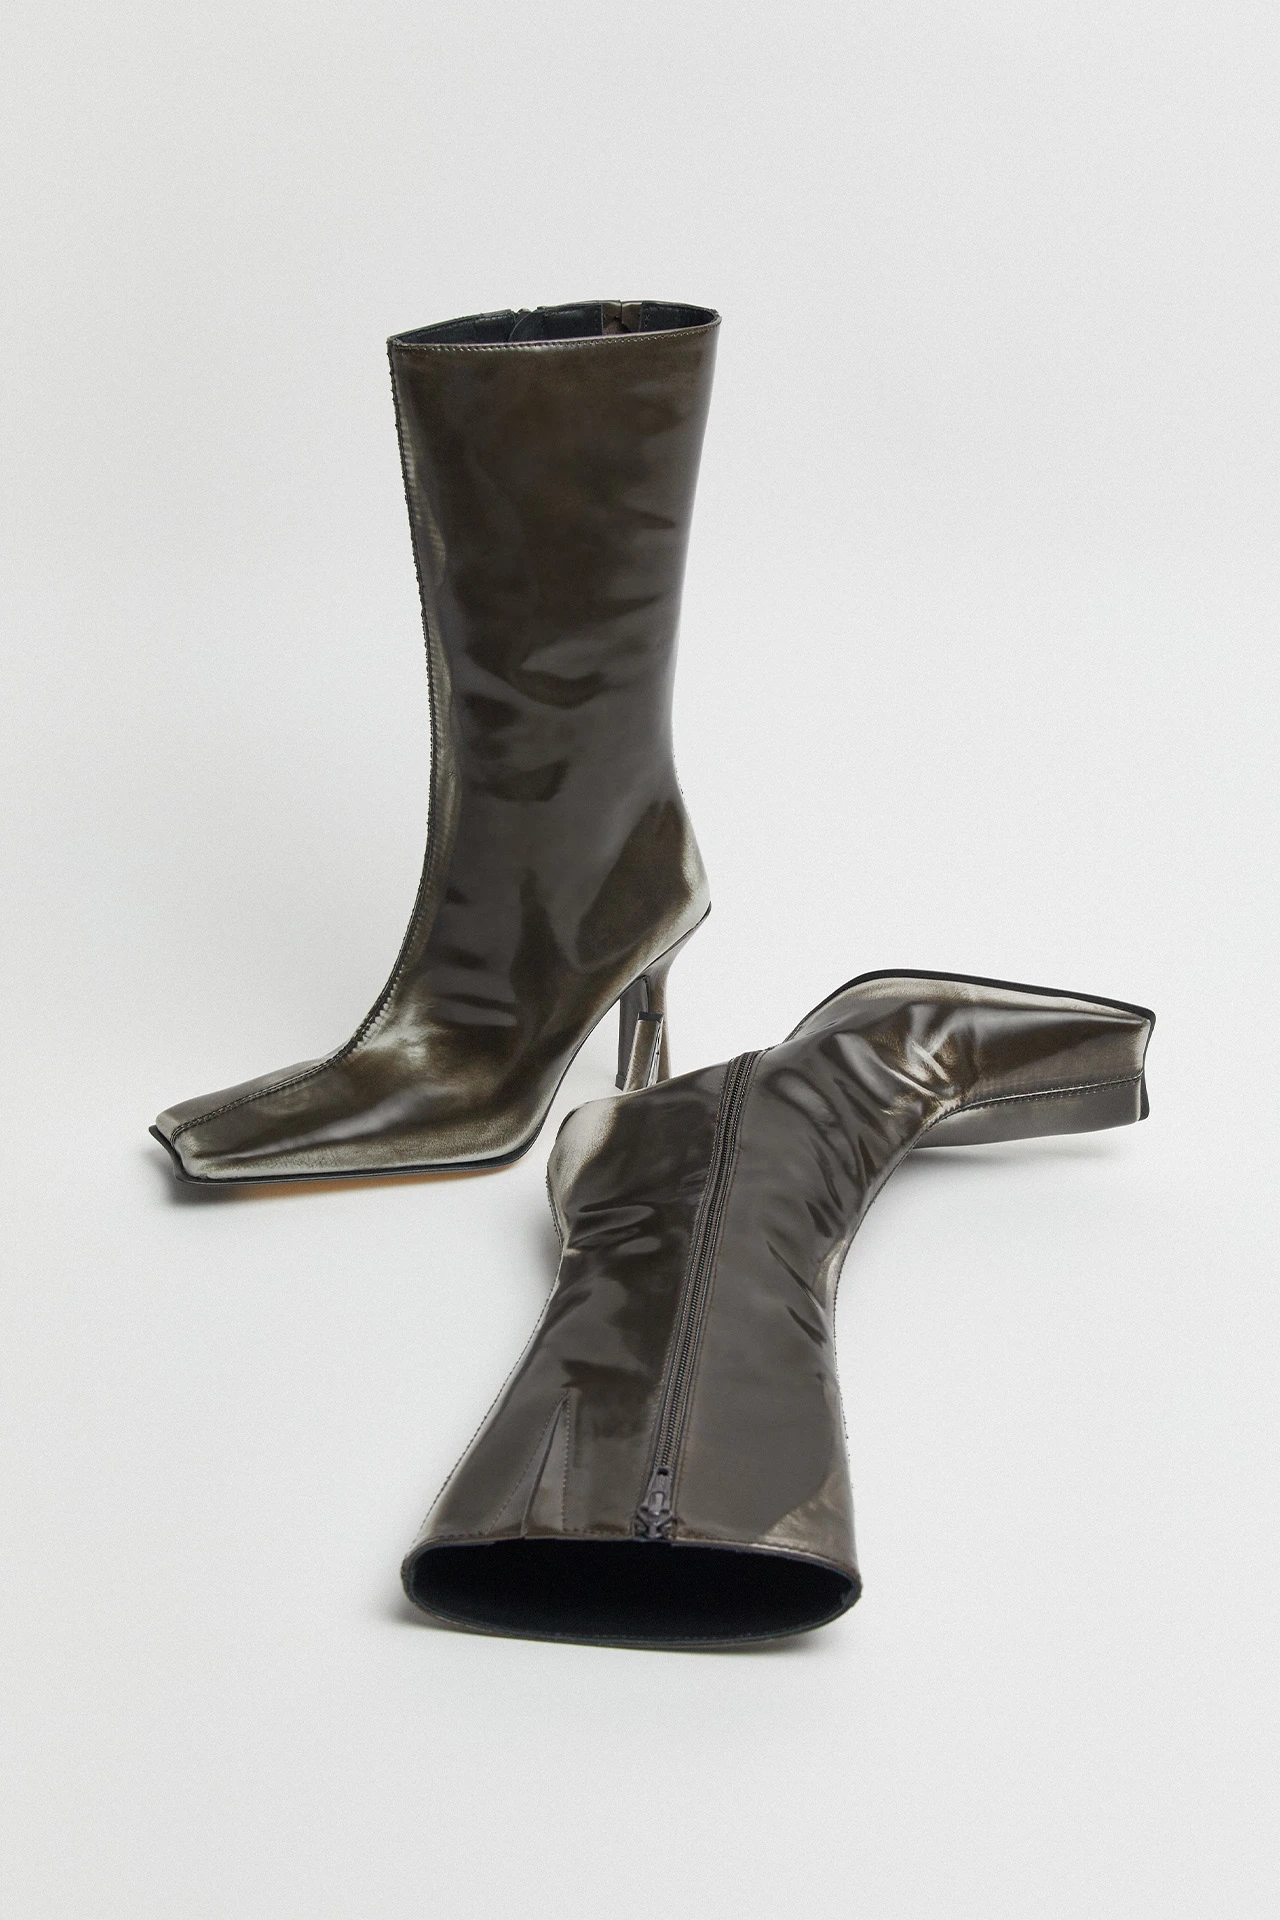 Miista-noor-grey-boots-02